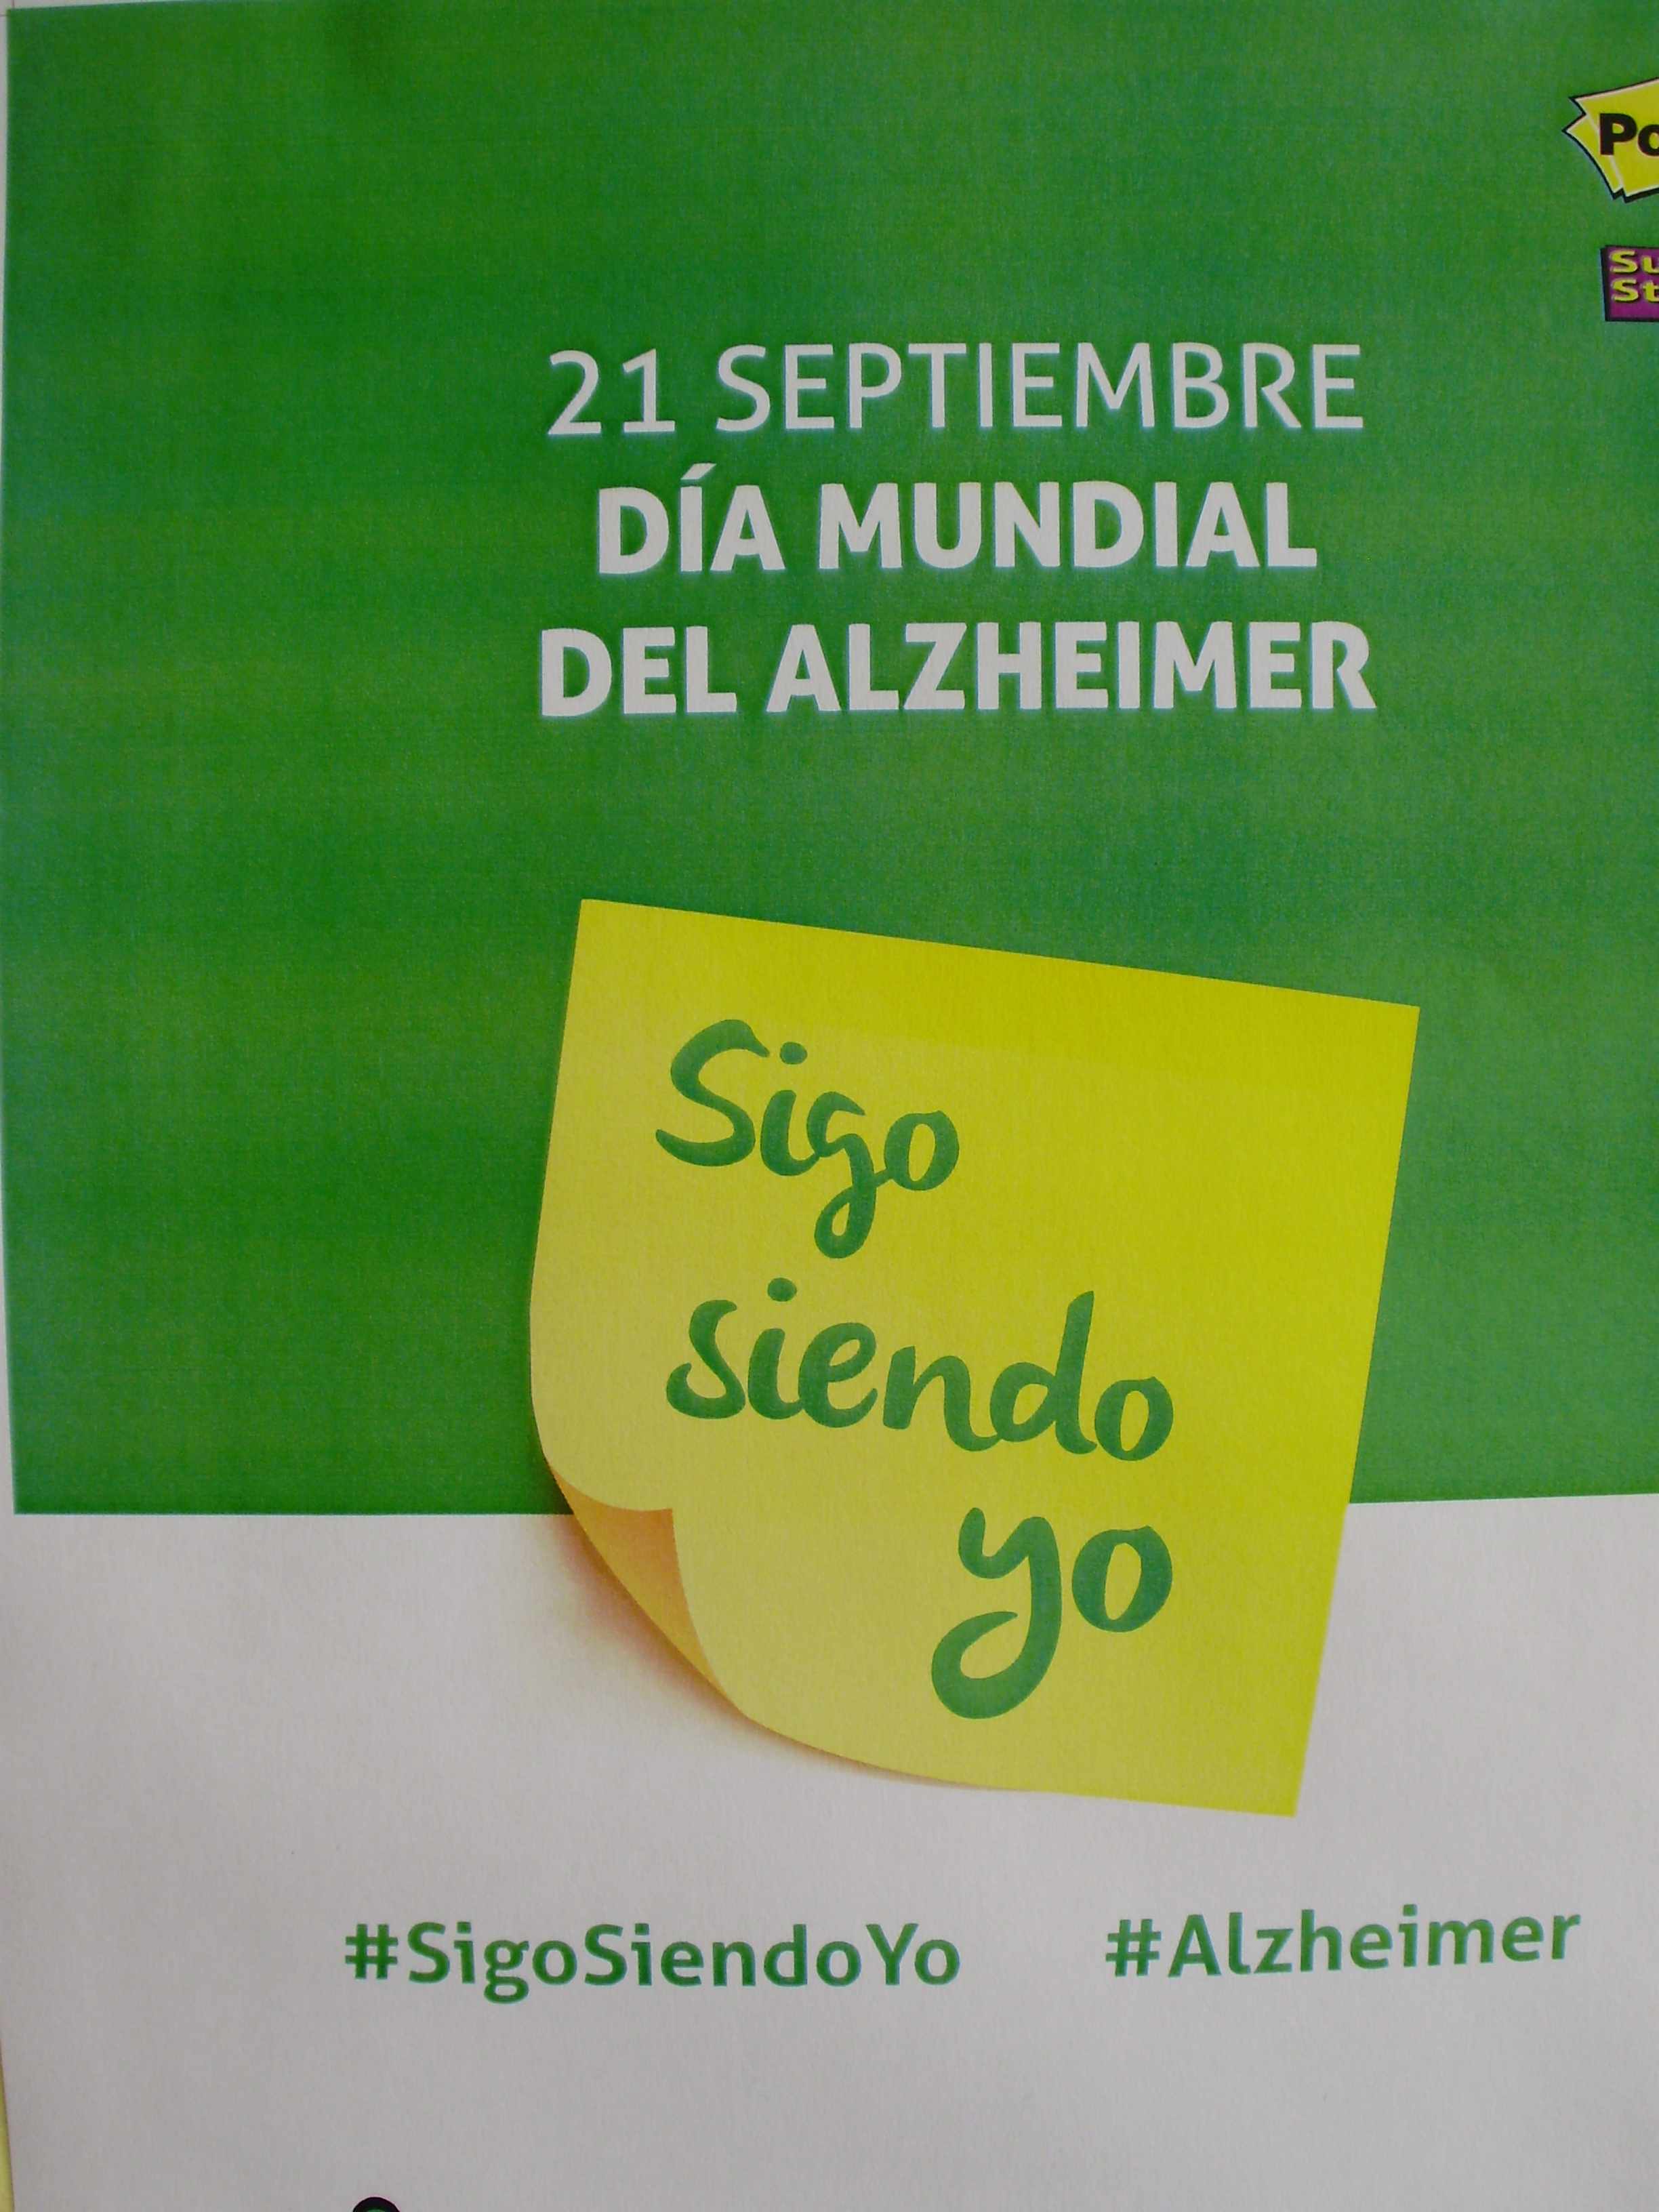  Da Mundial de Alzheimer en la provincia de Teruel